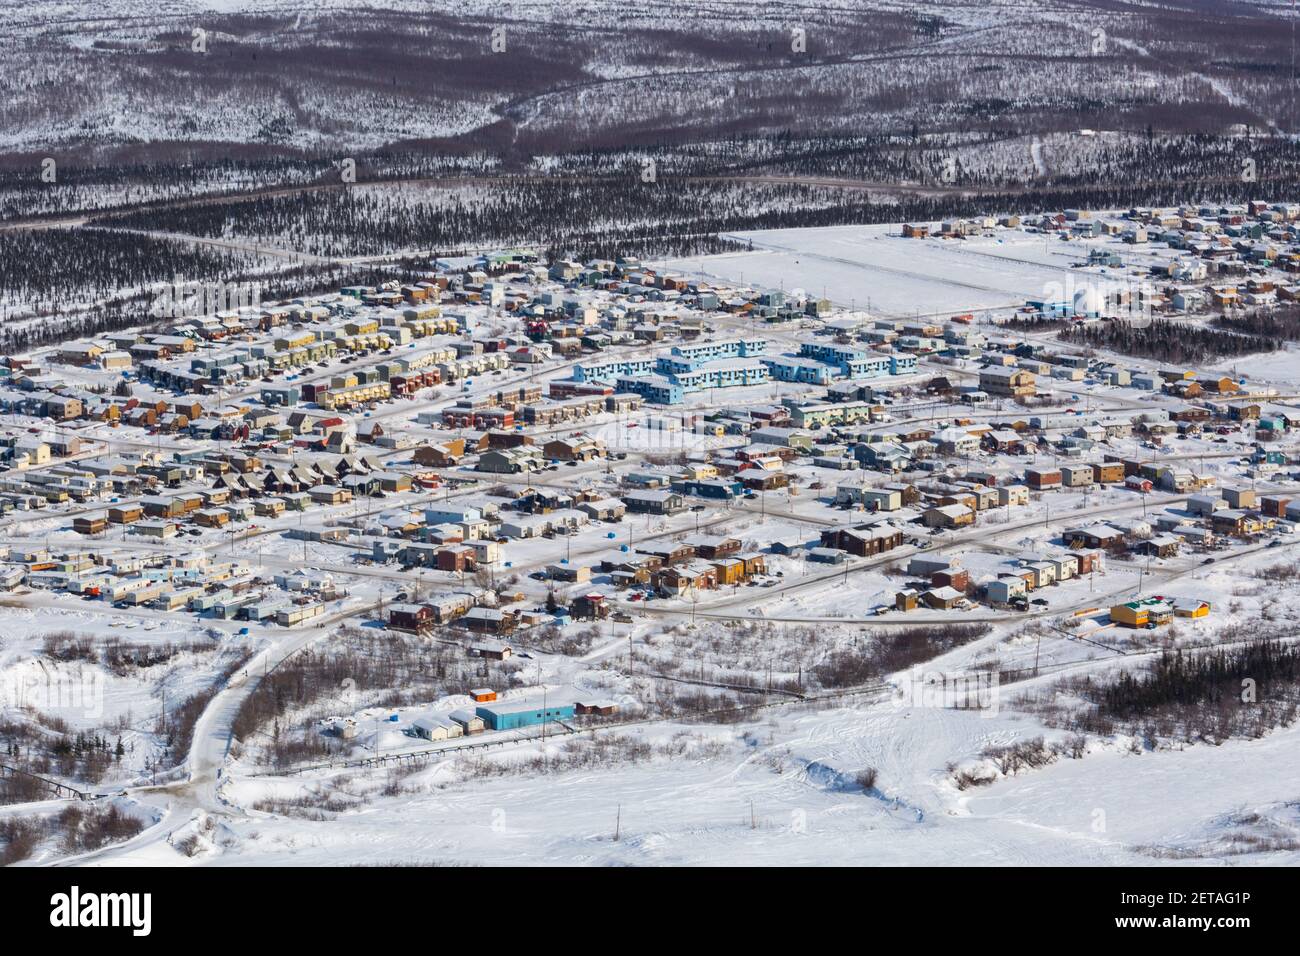 Vue aérienne en hiver des bâtiments de la ville d'Inuvik, dans la région du delta de Beaufort, dans les Territoires du Nord-Ouest, dans l'Arctique canadien. Banque D'Images